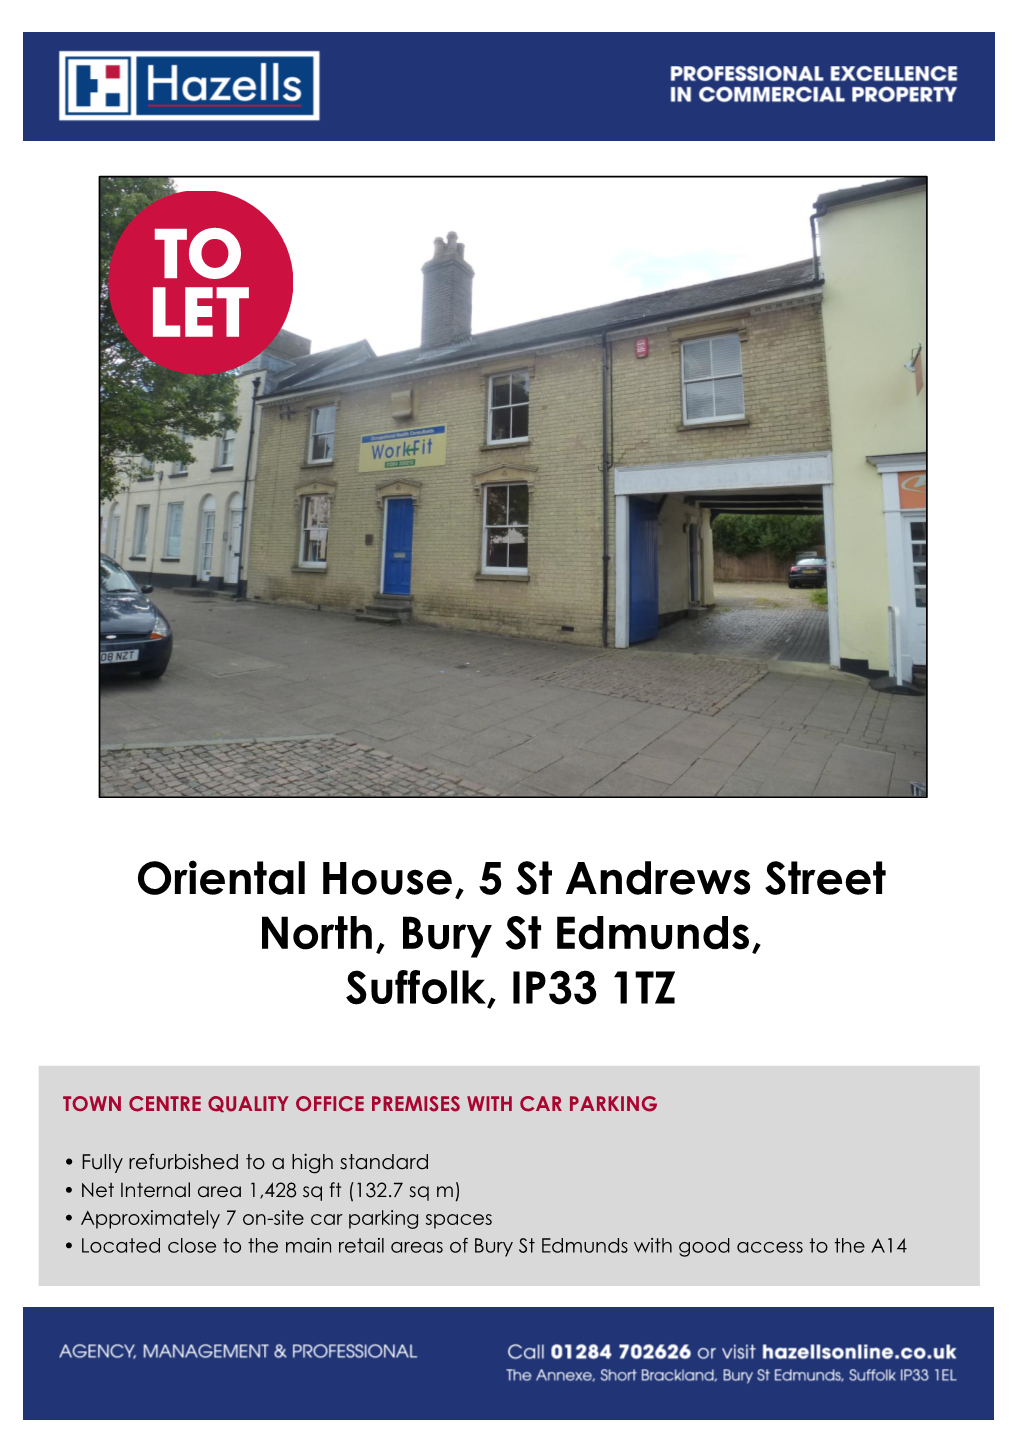 Oriental House, 5 St Andrews Street North, Bury St Edmunds, Suffolk, IP33 1TZ